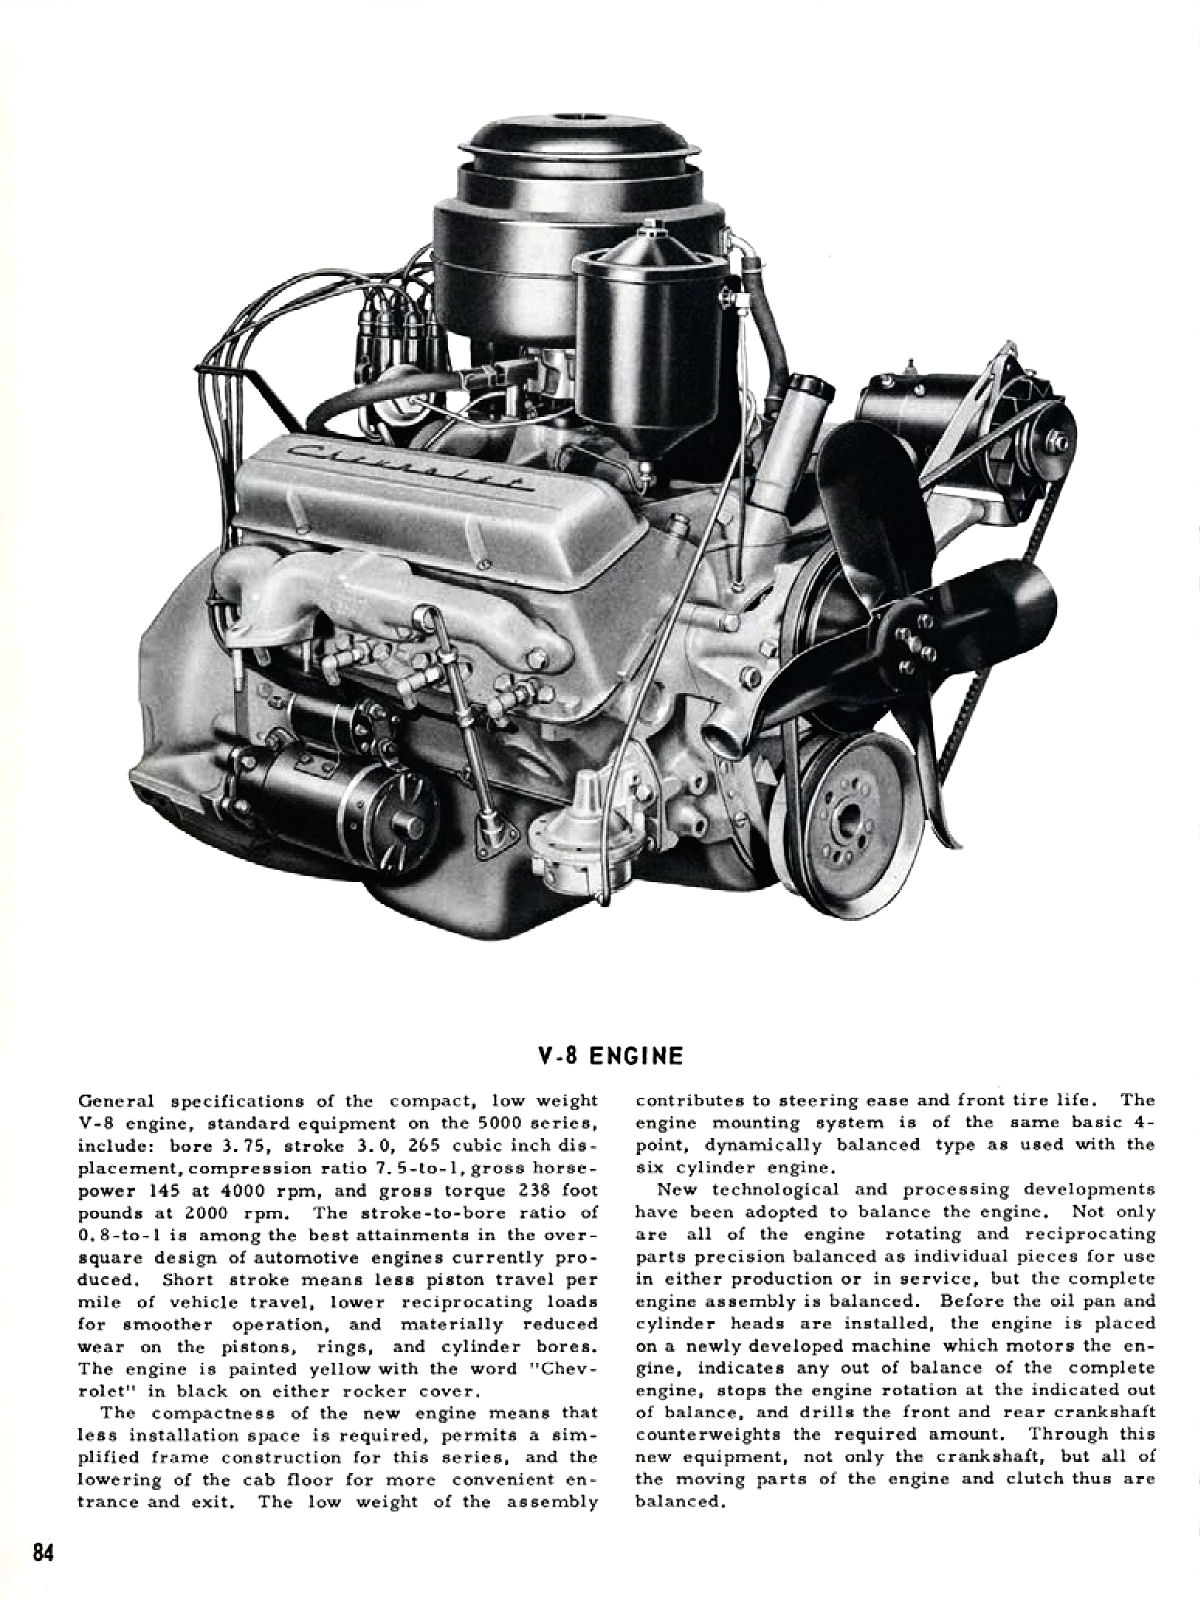 1955_Chevrolet_Truck_Engineering_Features-084